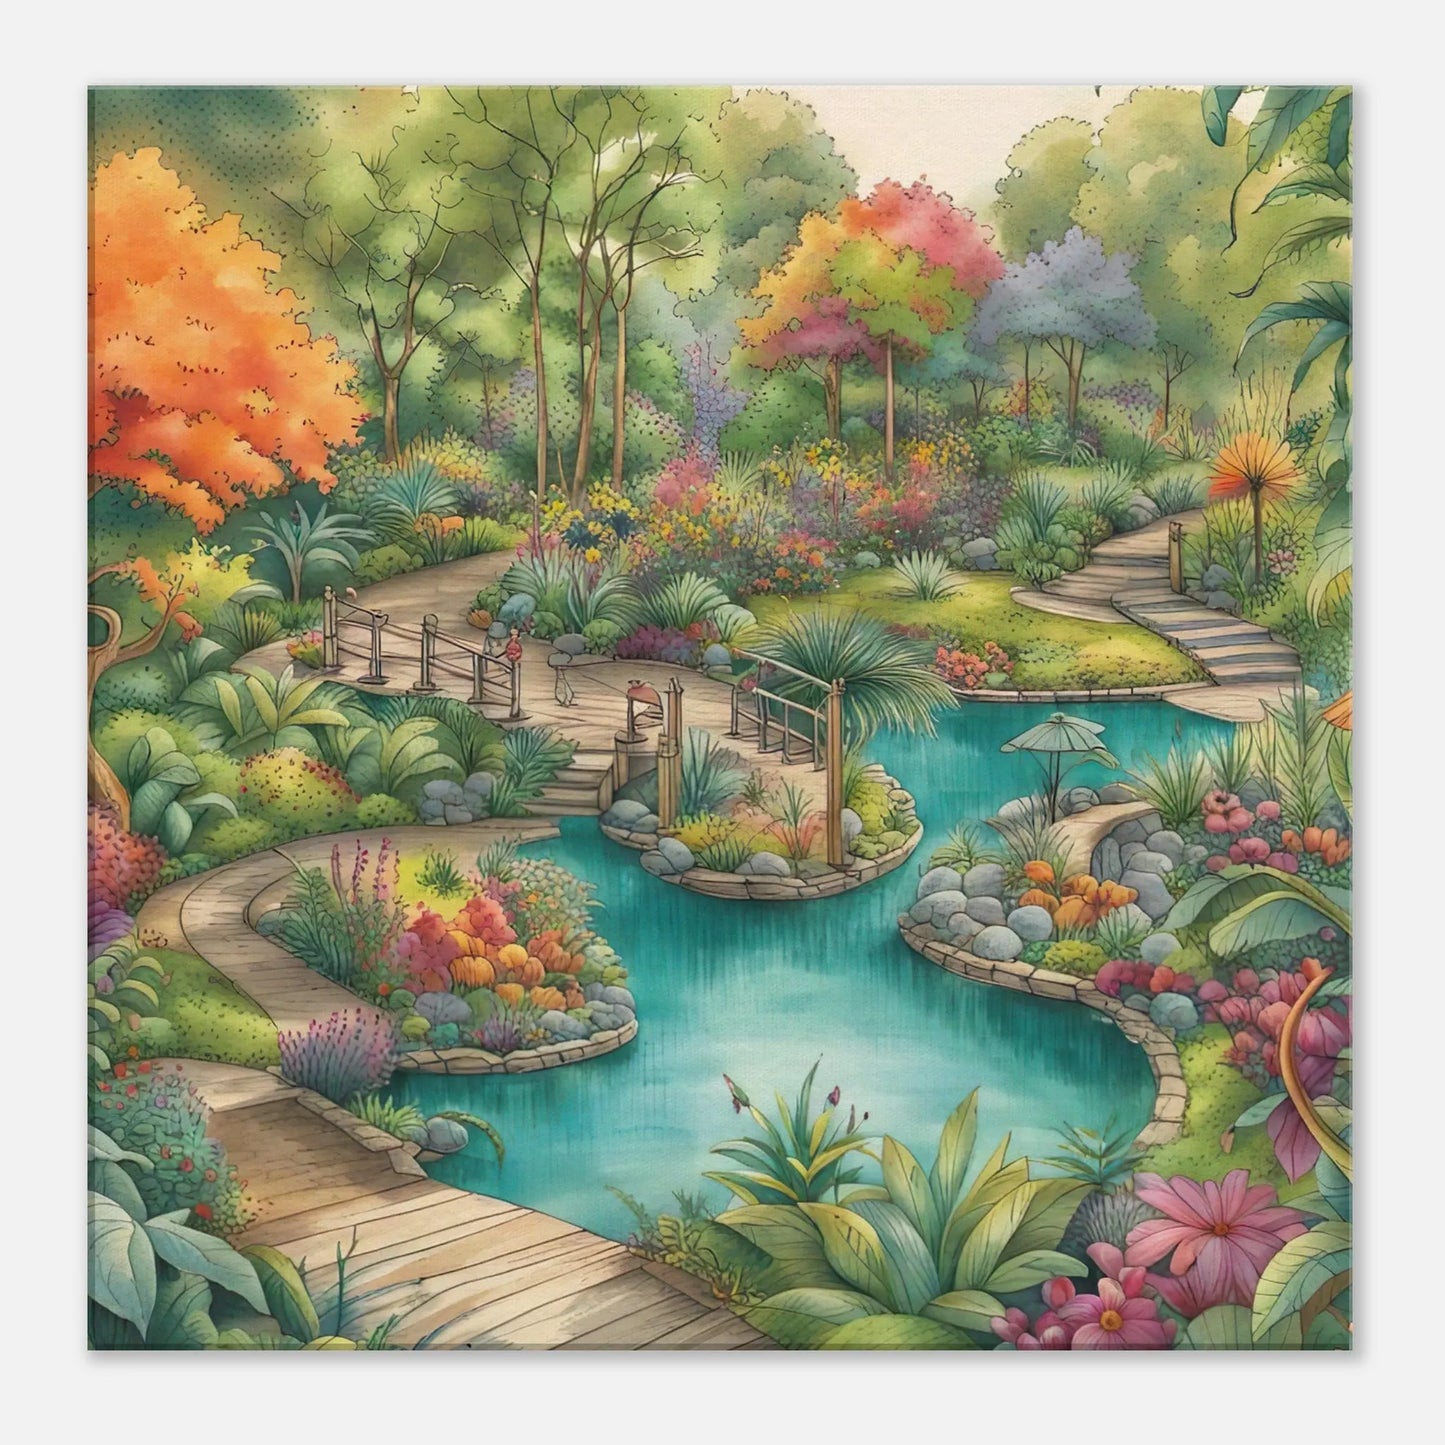 Leinwandbild - Garten mit Teich - Malerischer Stil, KI-Kunst - RolConArt, Landschaften, 60x60-cm-24x24